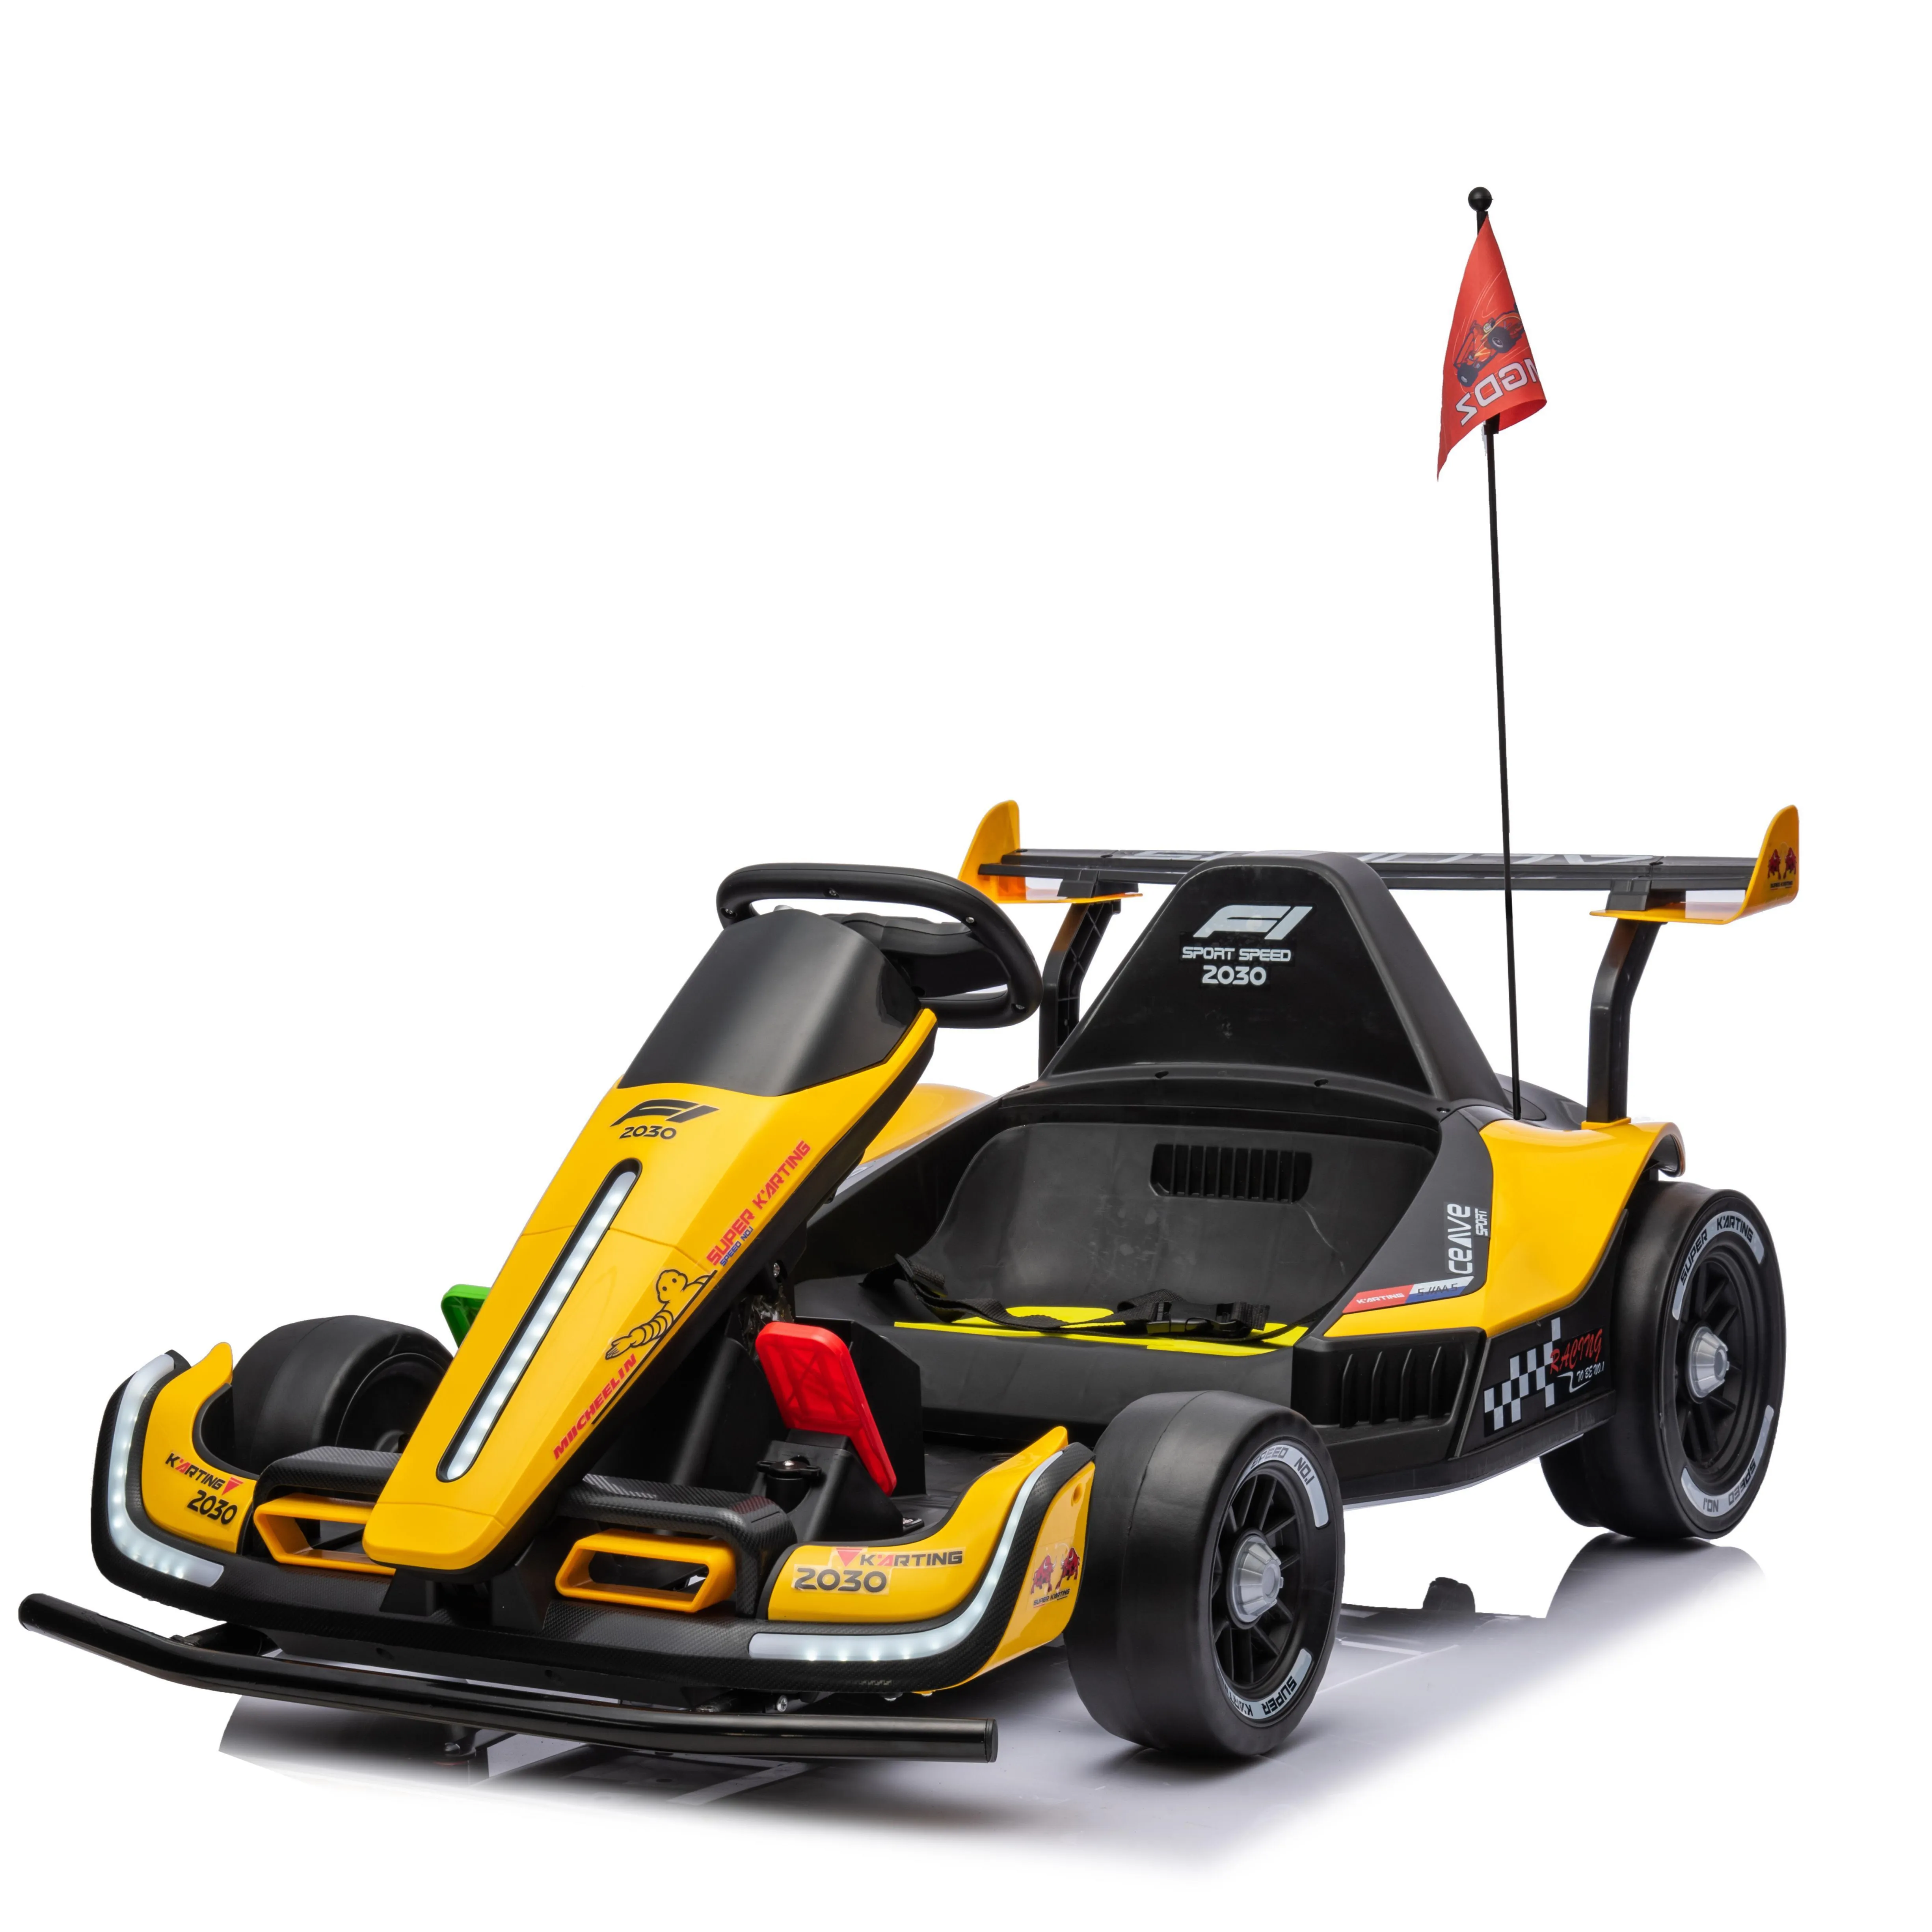 La voiture jouet F1 à la dérive électrique pour enfants peut prendre la poussette à quatre roues télécommandée parent-enfant adulte pour enfants.